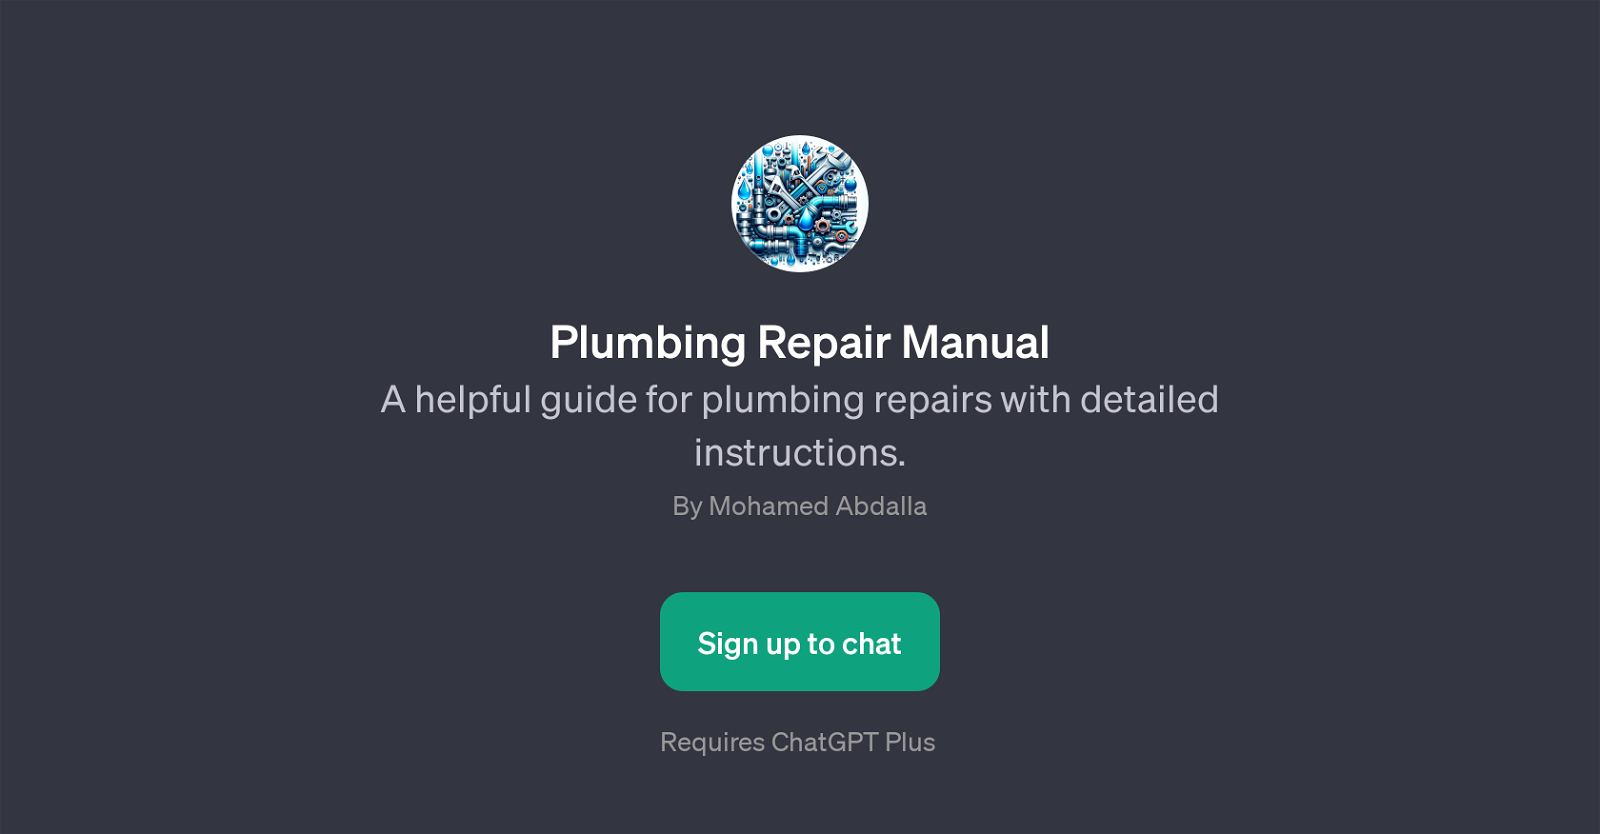 Plumbing Repair Manual website